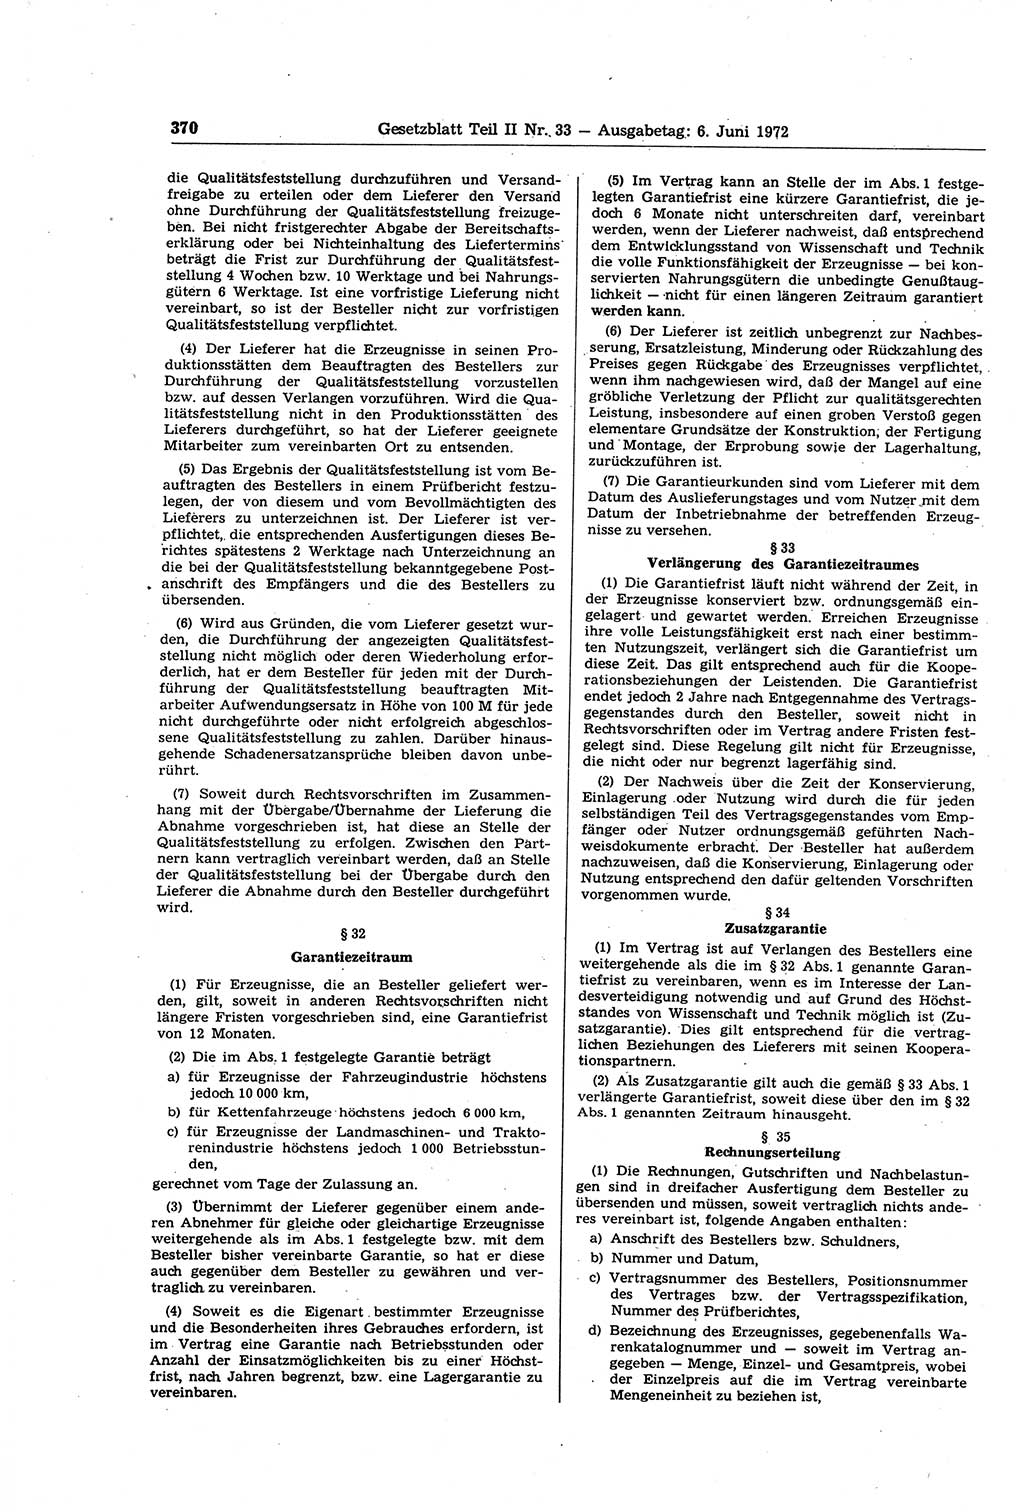 Gesetzblatt (GBl.) der Deutschen Demokratischen Republik (DDR) Teil ⅠⅠ 1972, Seite 370 (GBl. DDR ⅠⅠ 1972, S. 370)